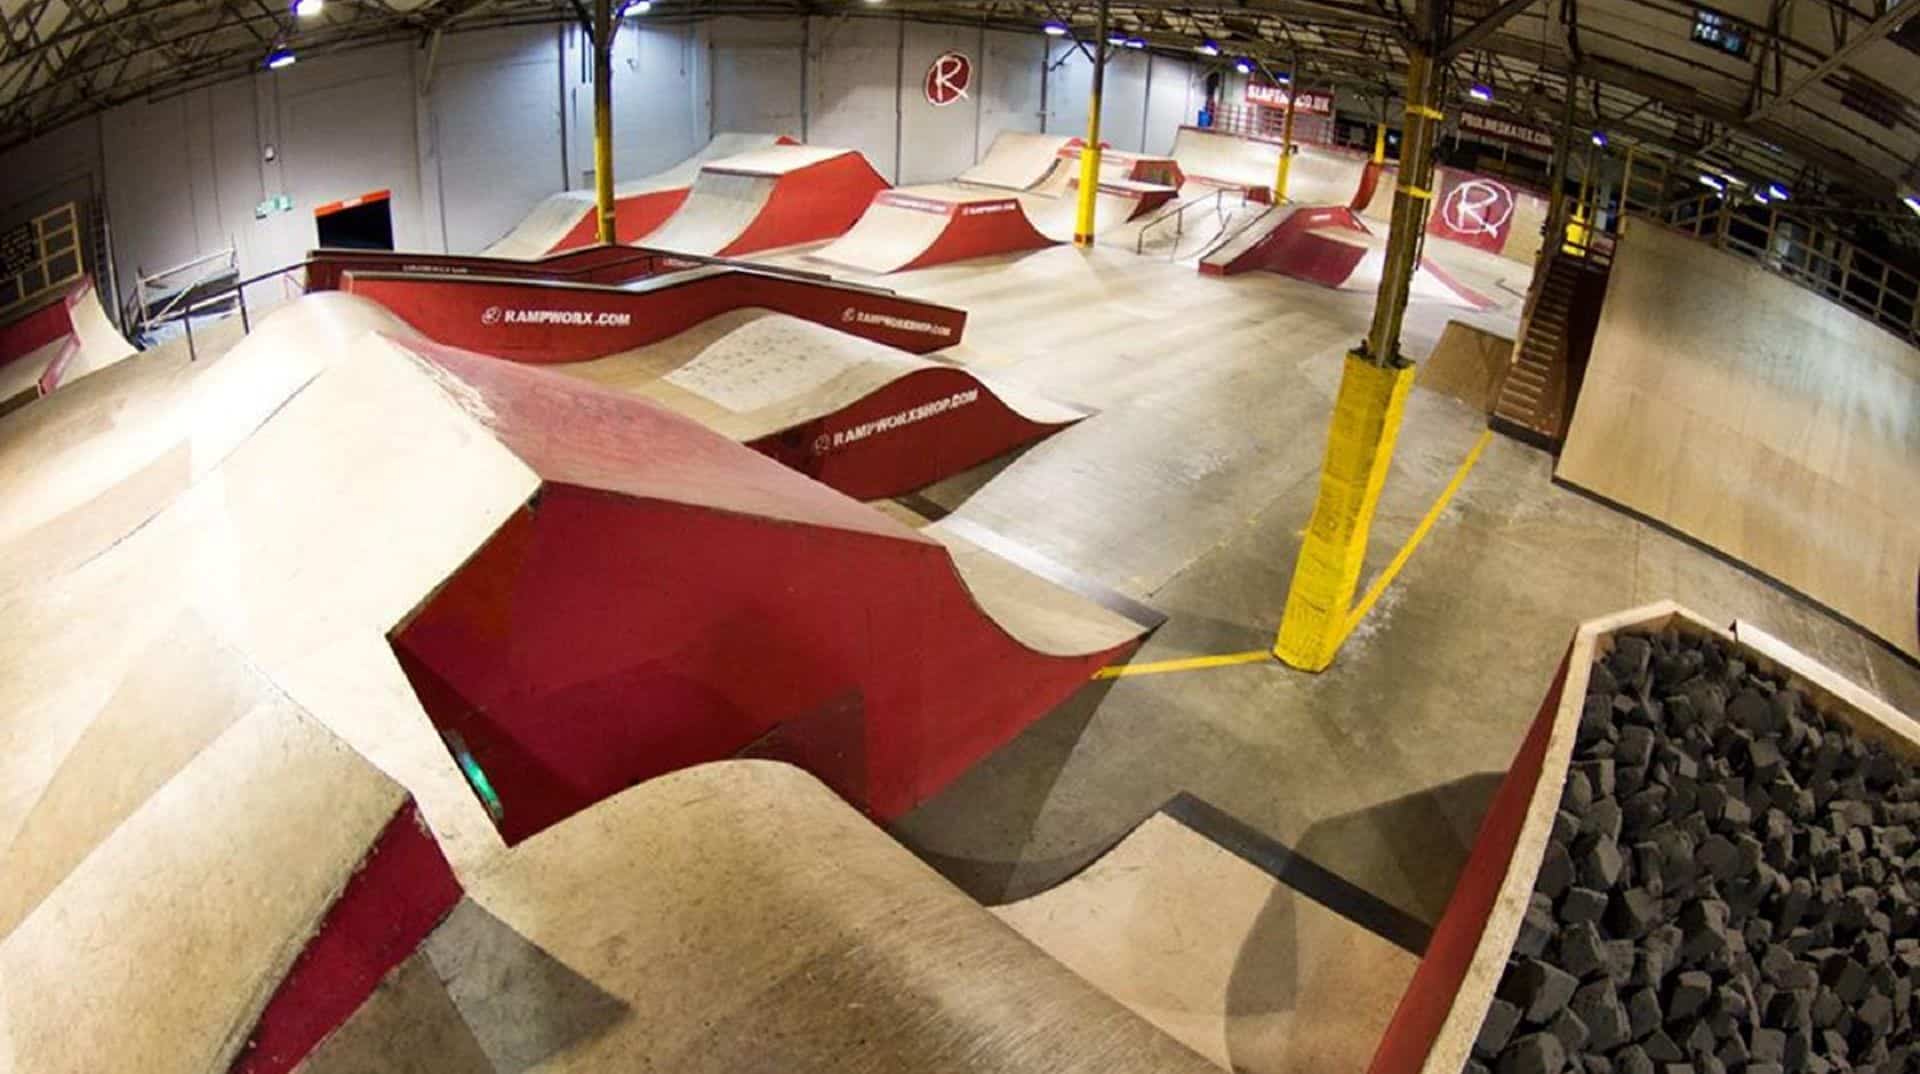 Rampworx Skatepark in UK